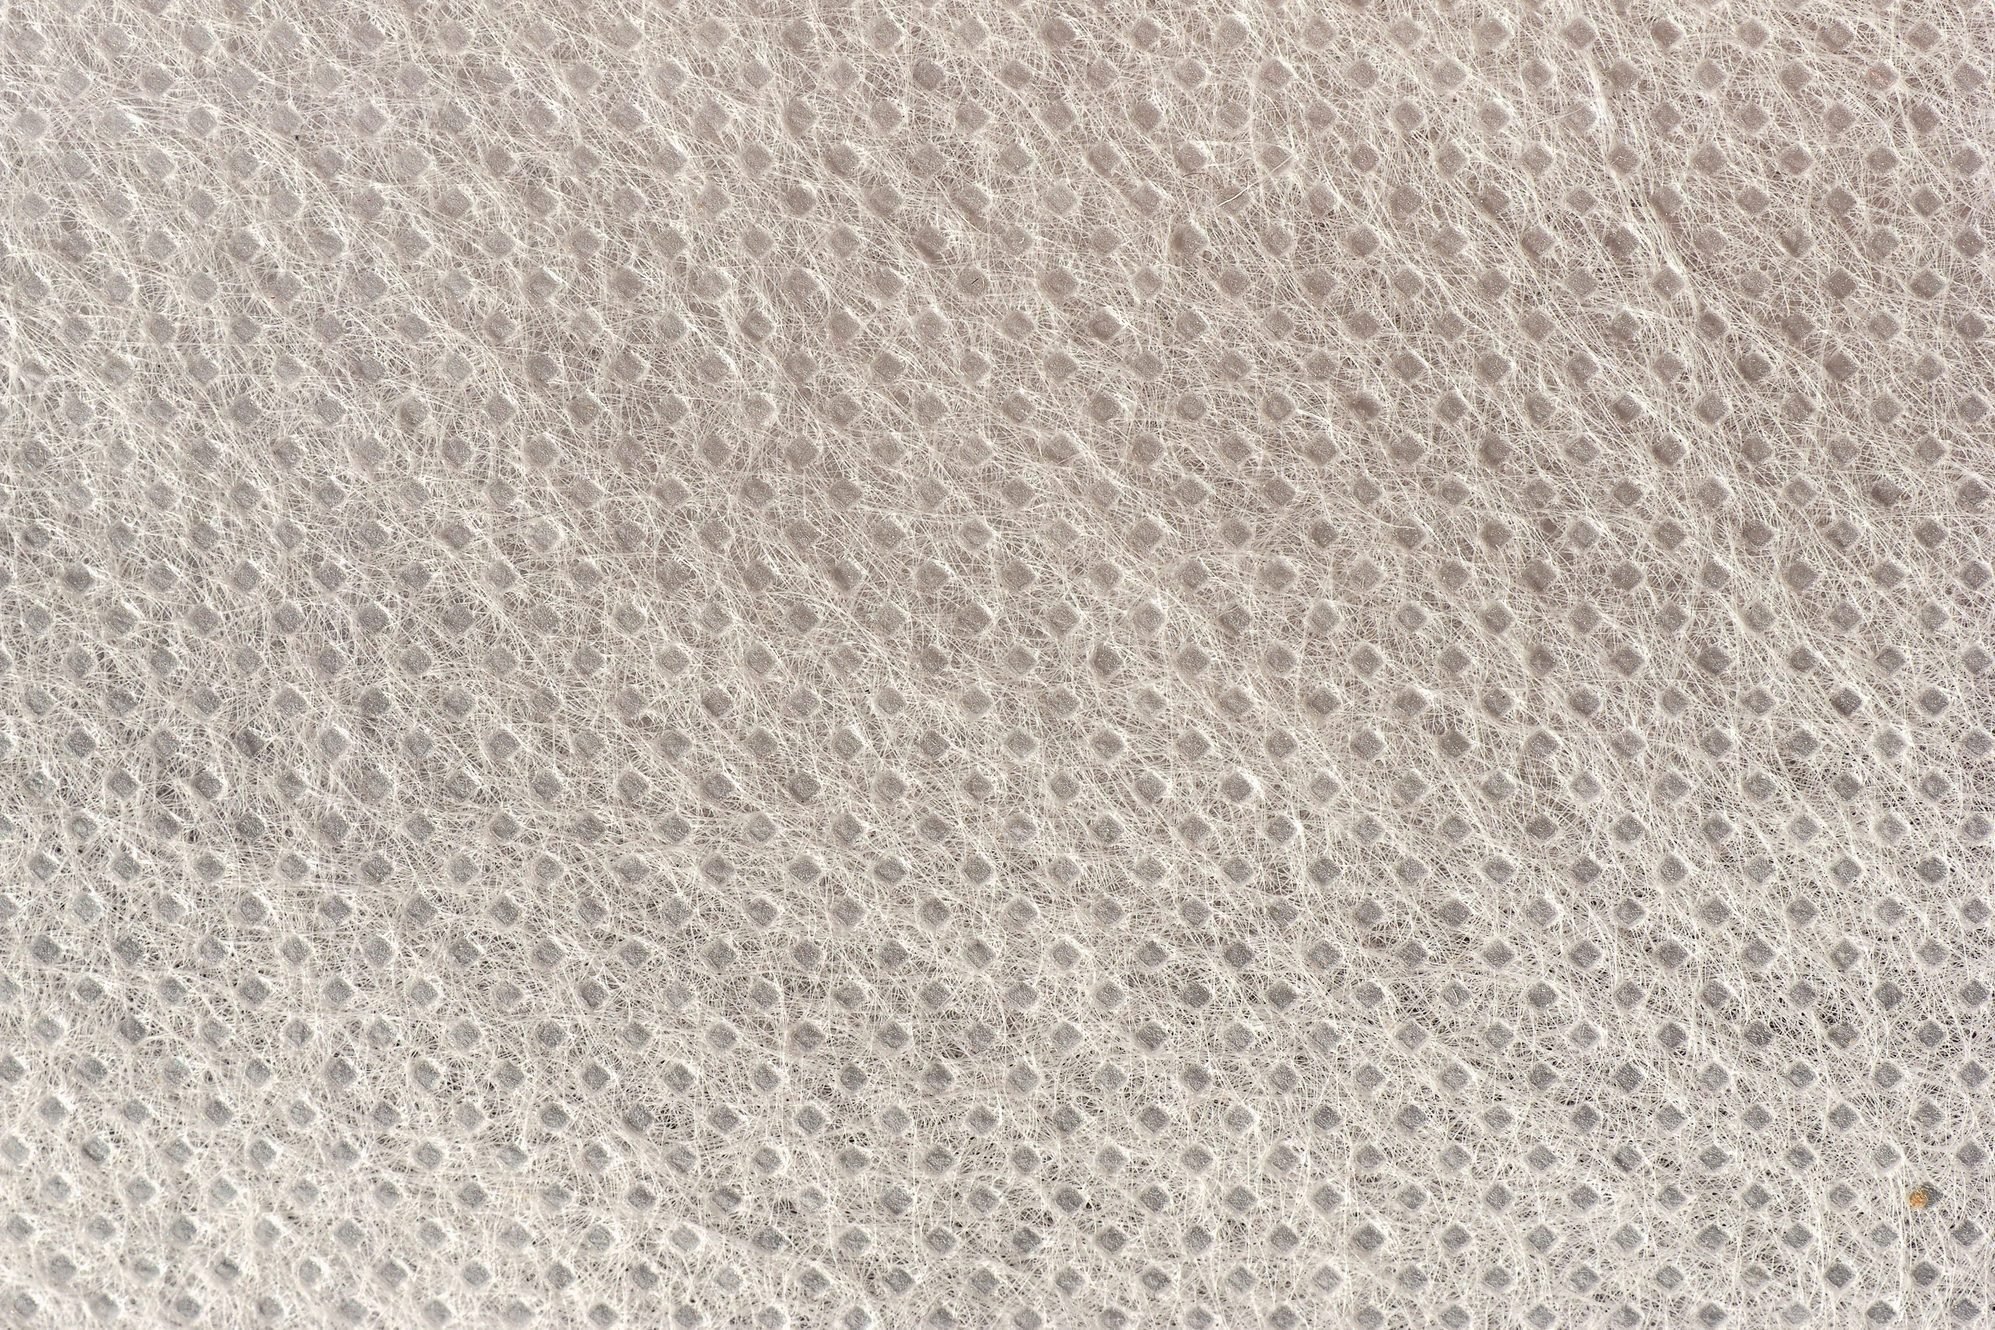 polypropylene fabric texture close up